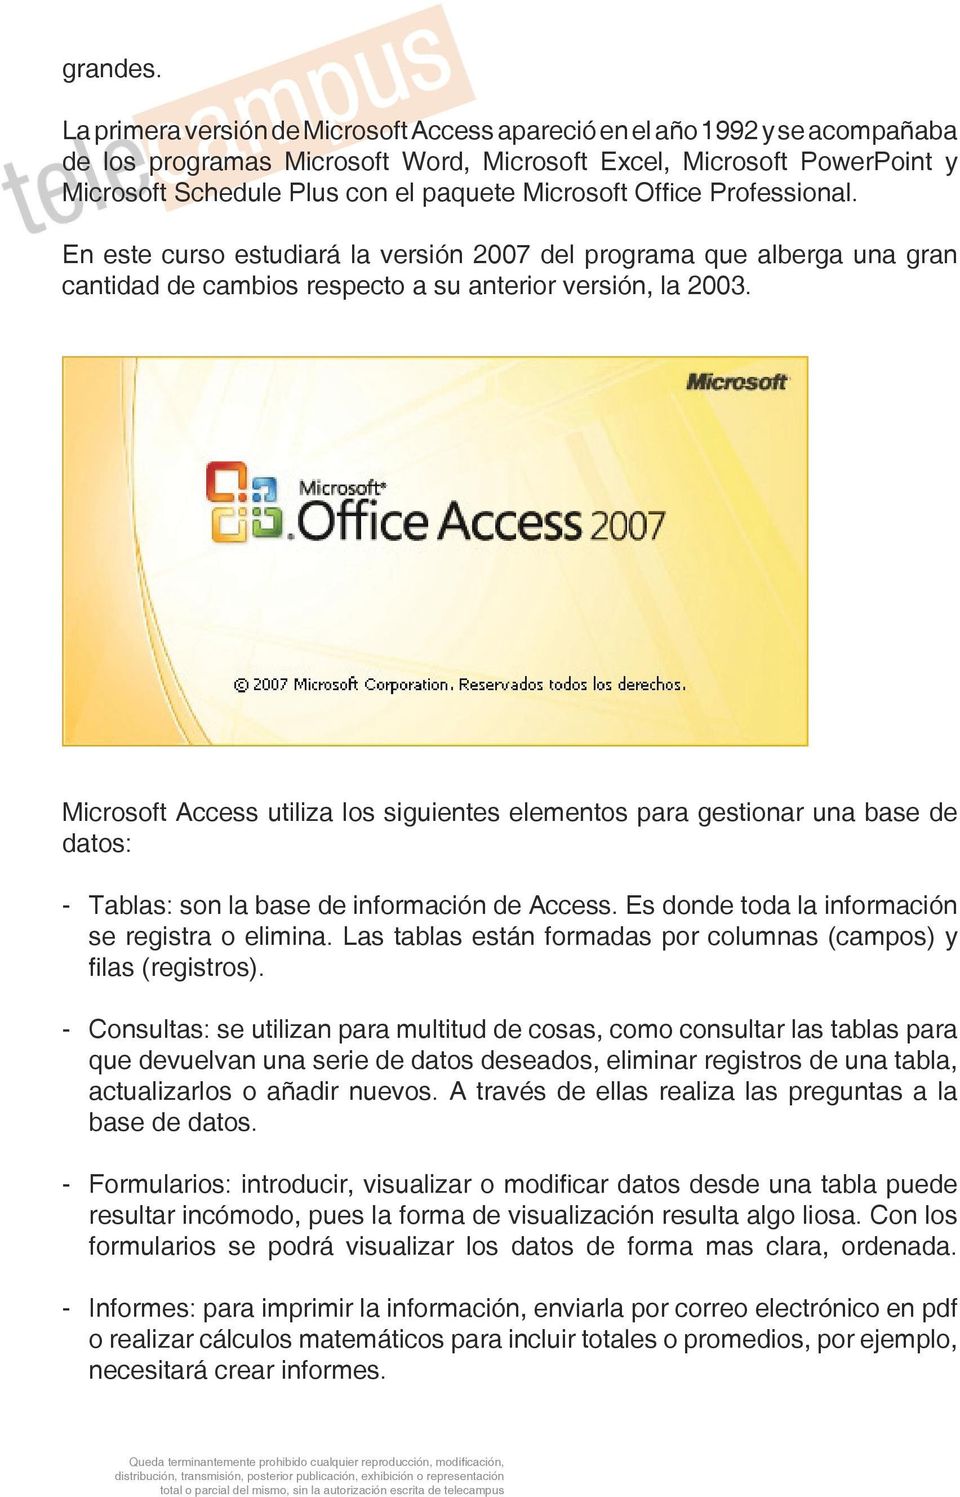 Microsoft Office Professional. En este curso estudiará la versión 2007 del programa que alberga una gran cantidad de cambios respecto a su anterior versión, la 2003.